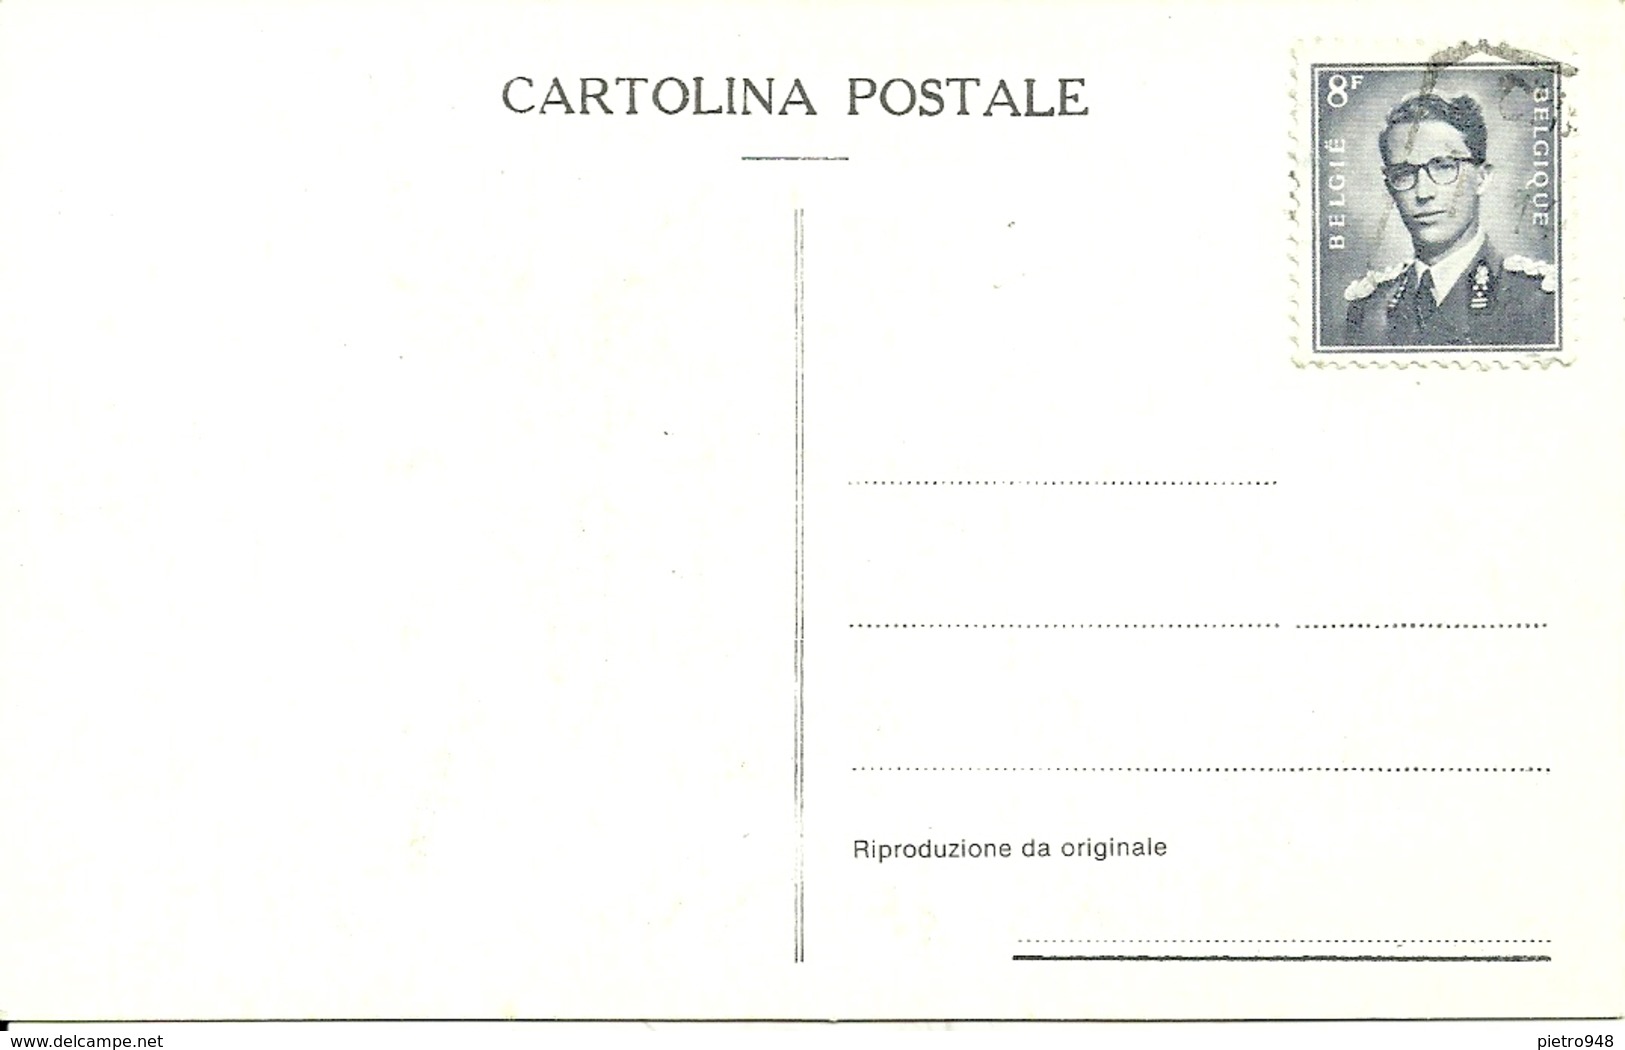 Napoli, Bambini "Mangiamaccheroni", Riproduzione A21, Reproduction, Stamp 8 F Belgique - Gruppi Di Bambini & Famiglie